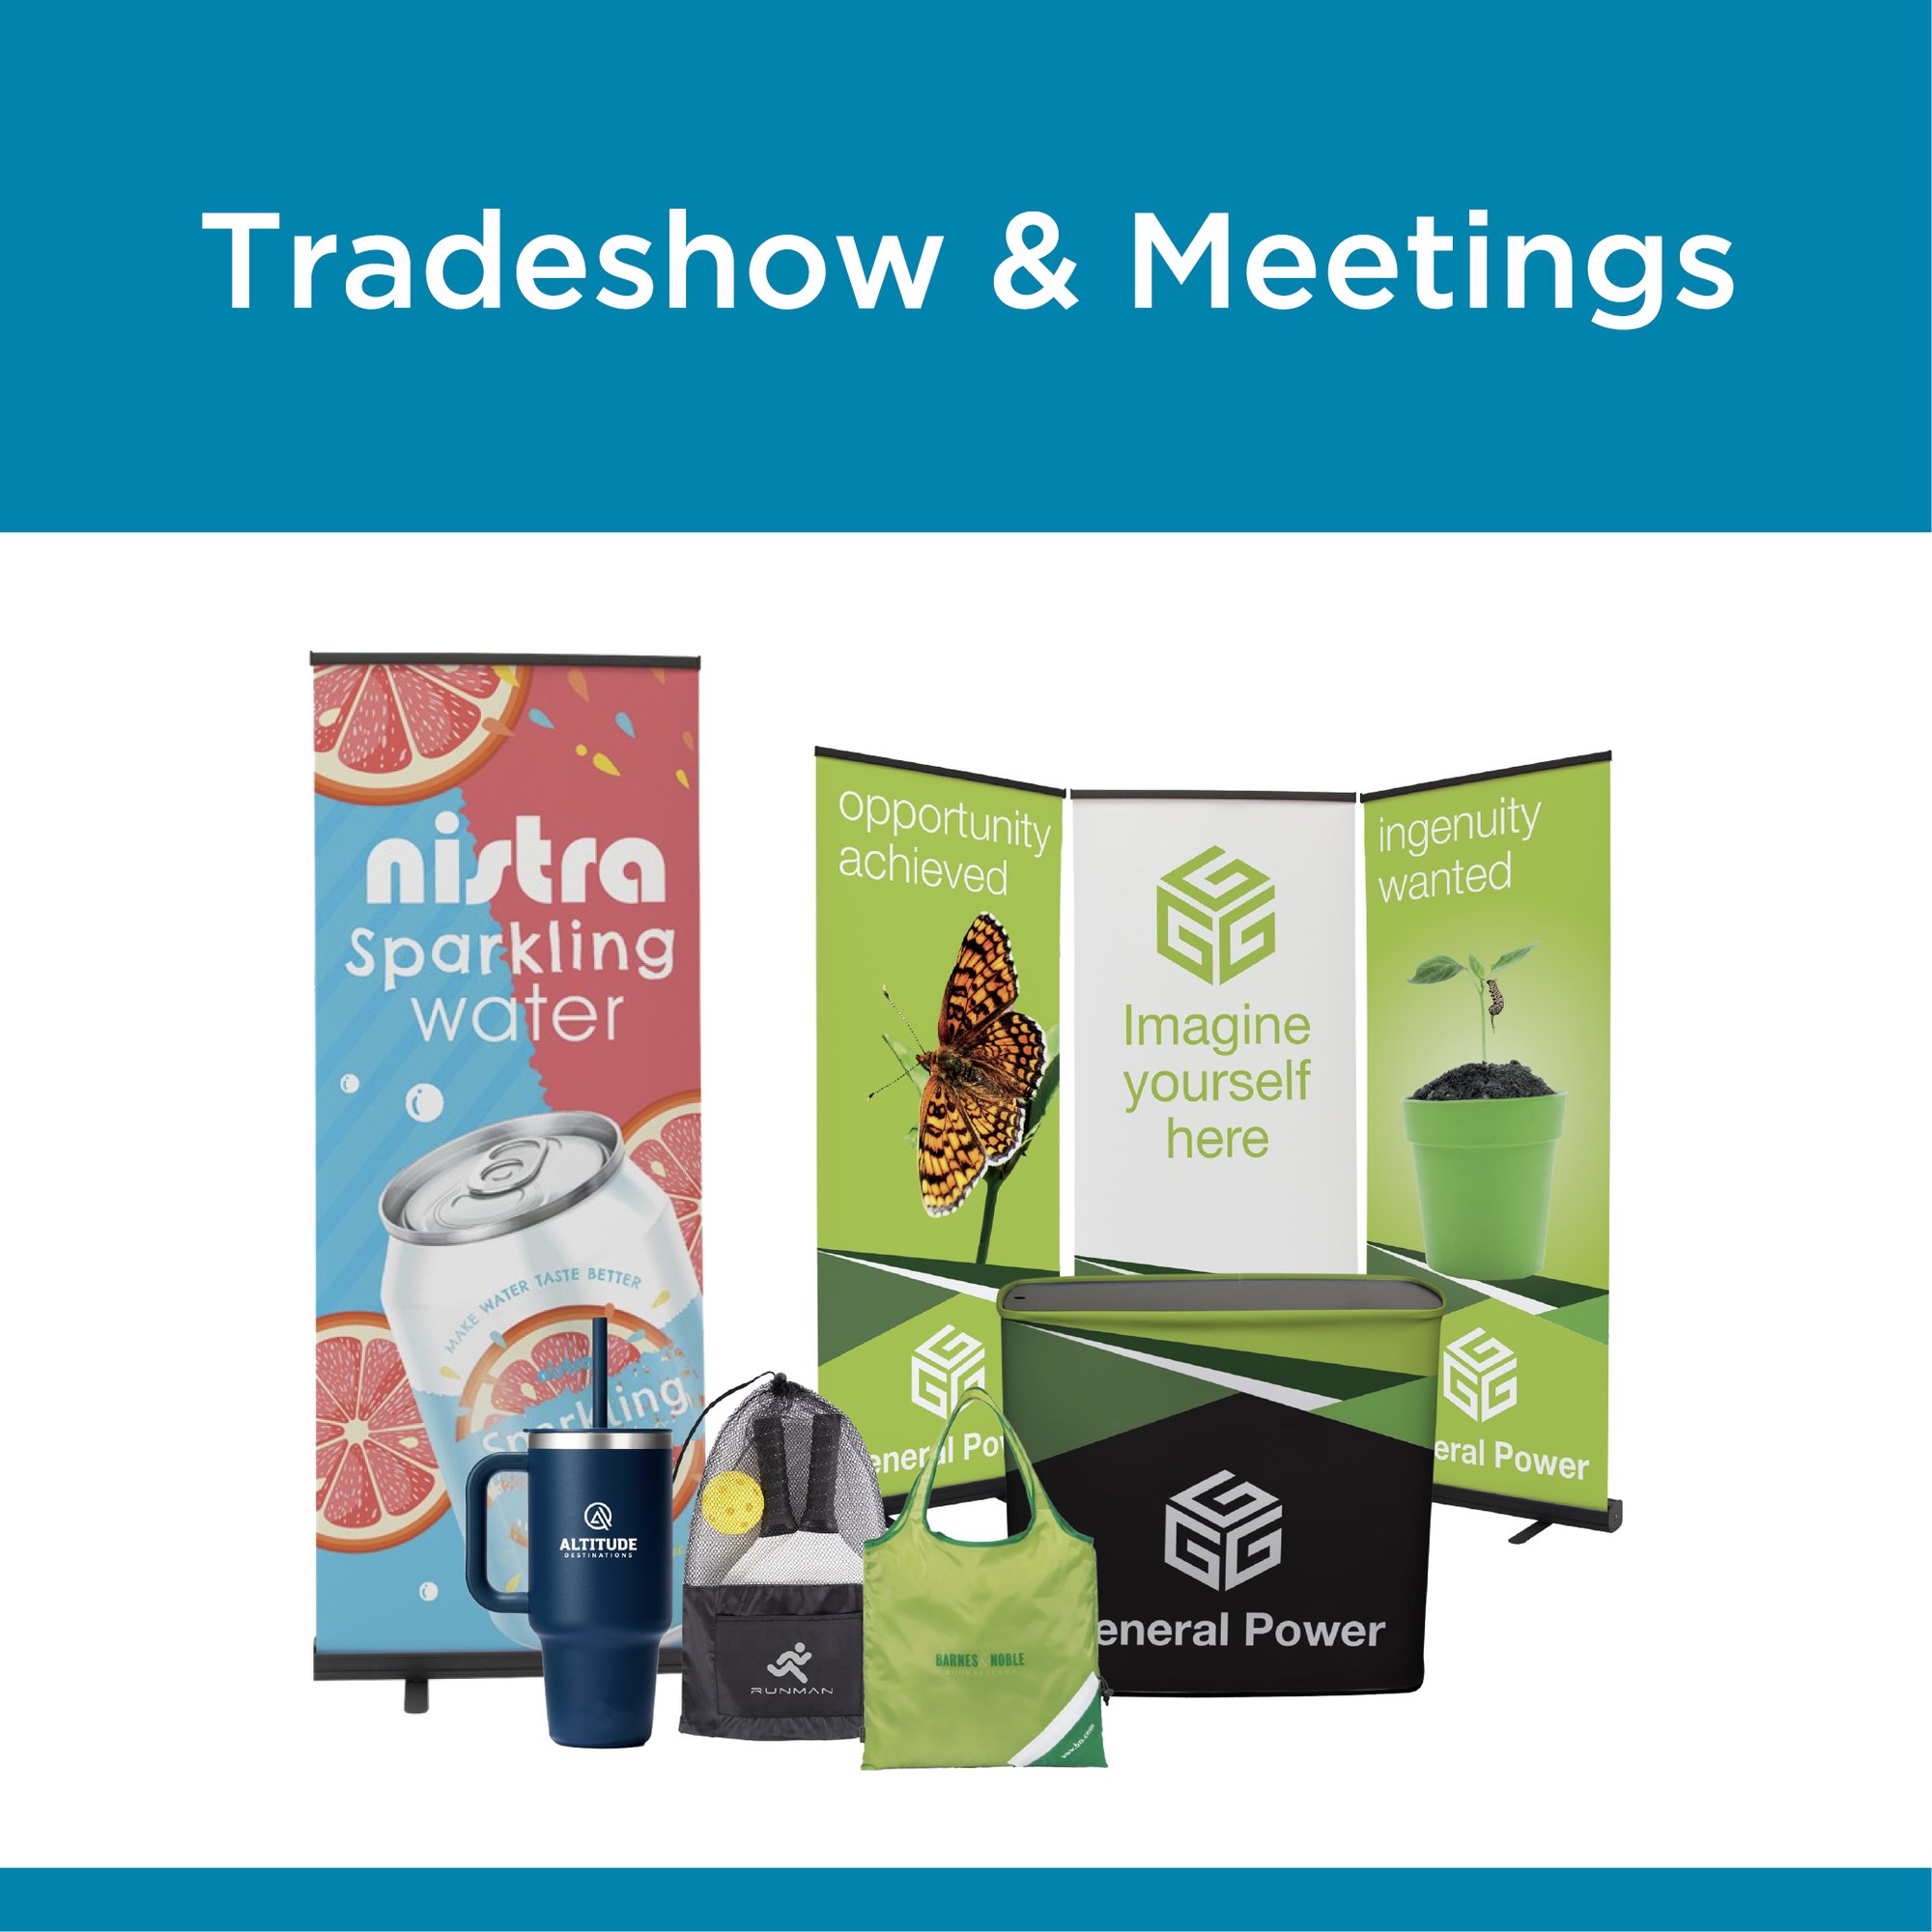 Tradeshow & Meetings